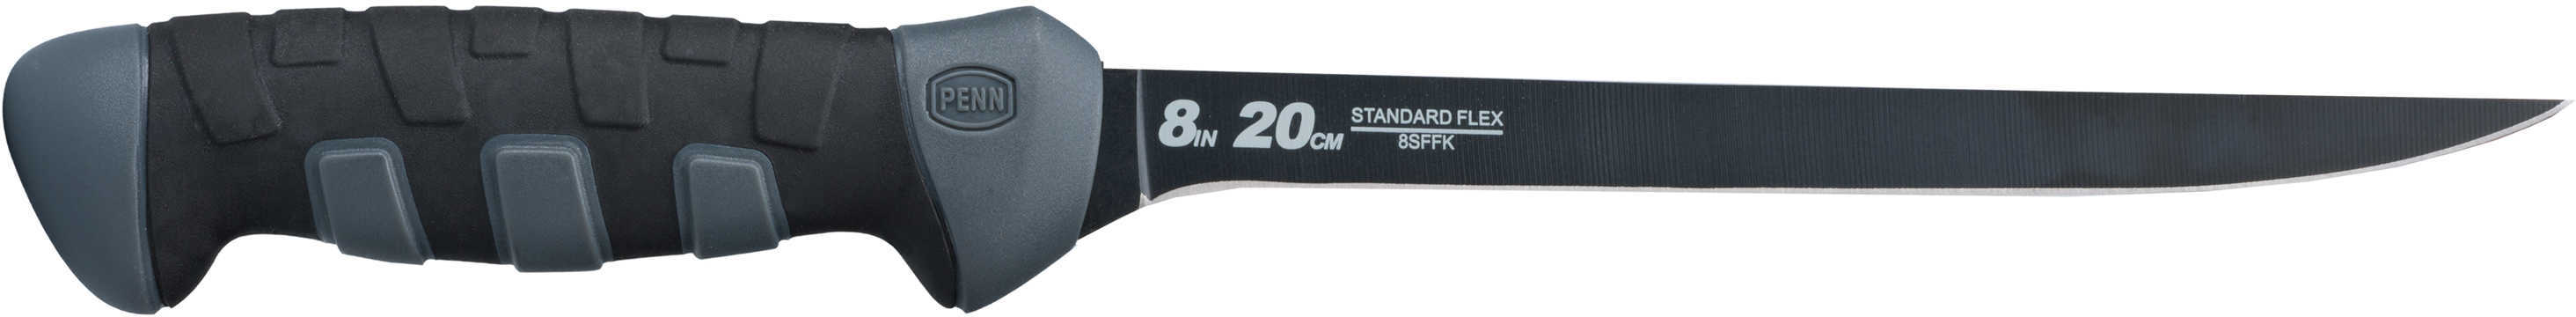 Penn Standard Flex Fillet Knife 8In Model: 8SFFK